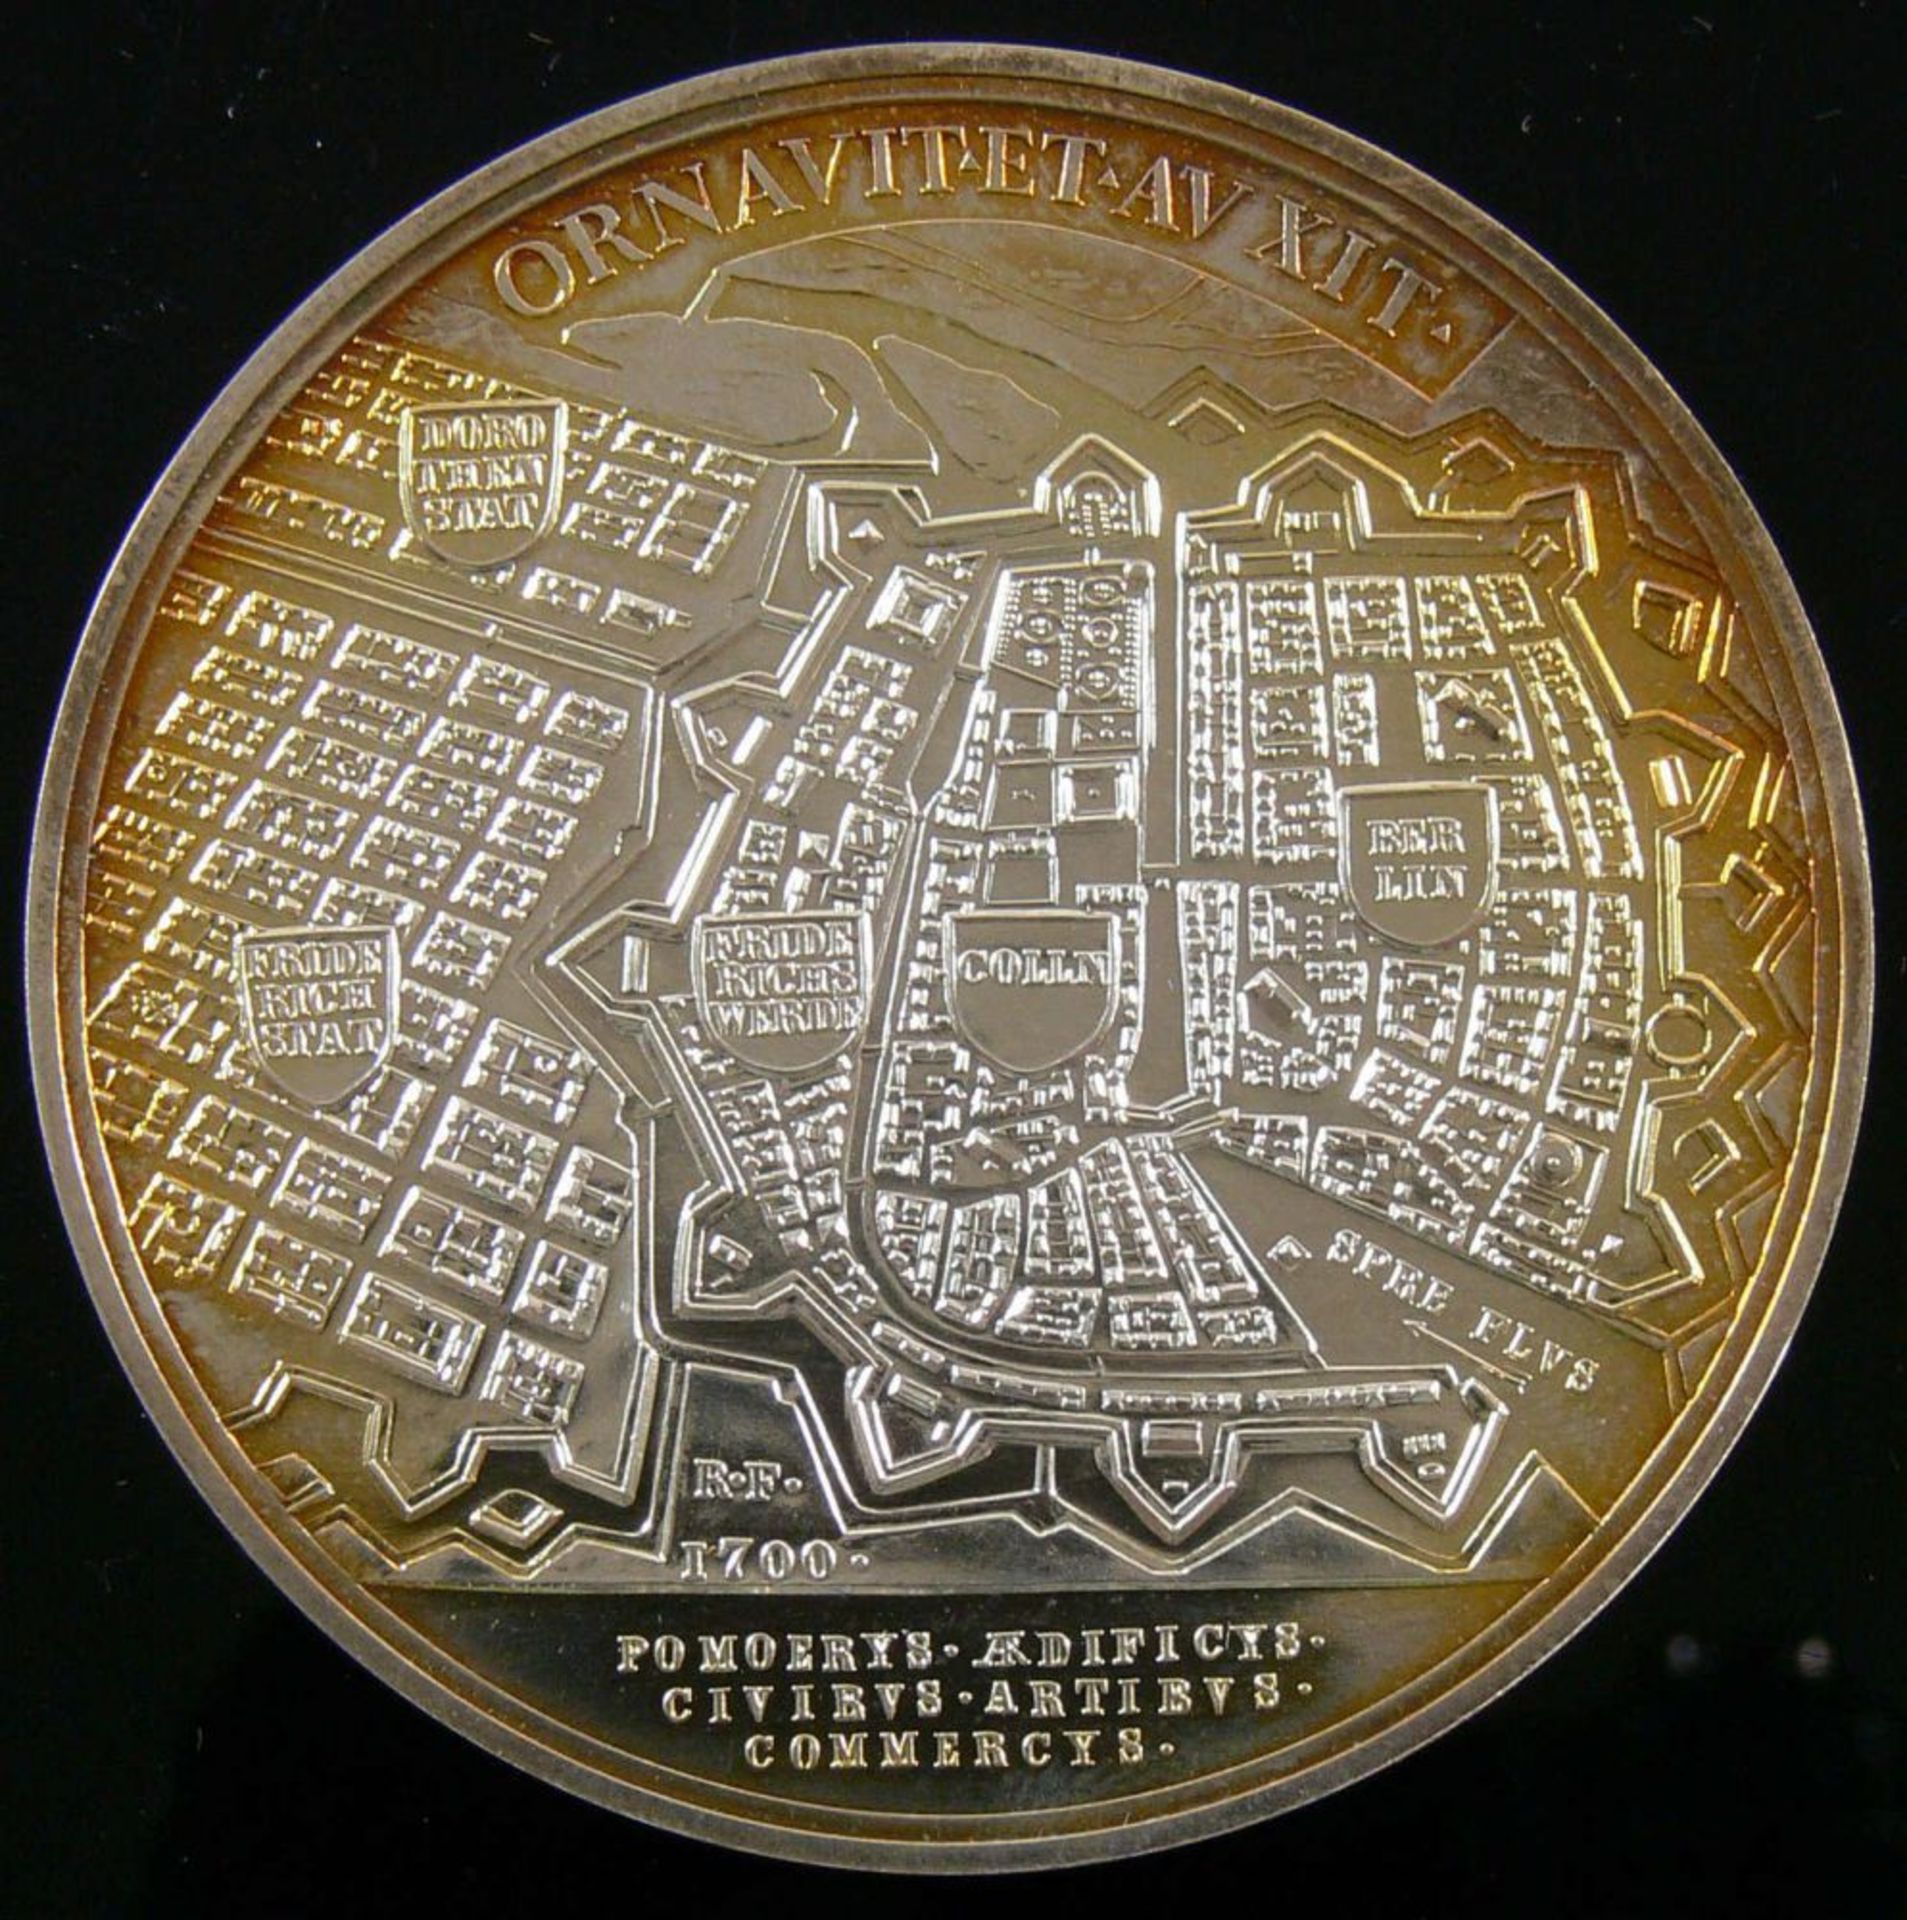 Silbermedaille 1993, "Zum 150 jährigen Bestehen der numismatischen Gesellschaft zu Berlin"